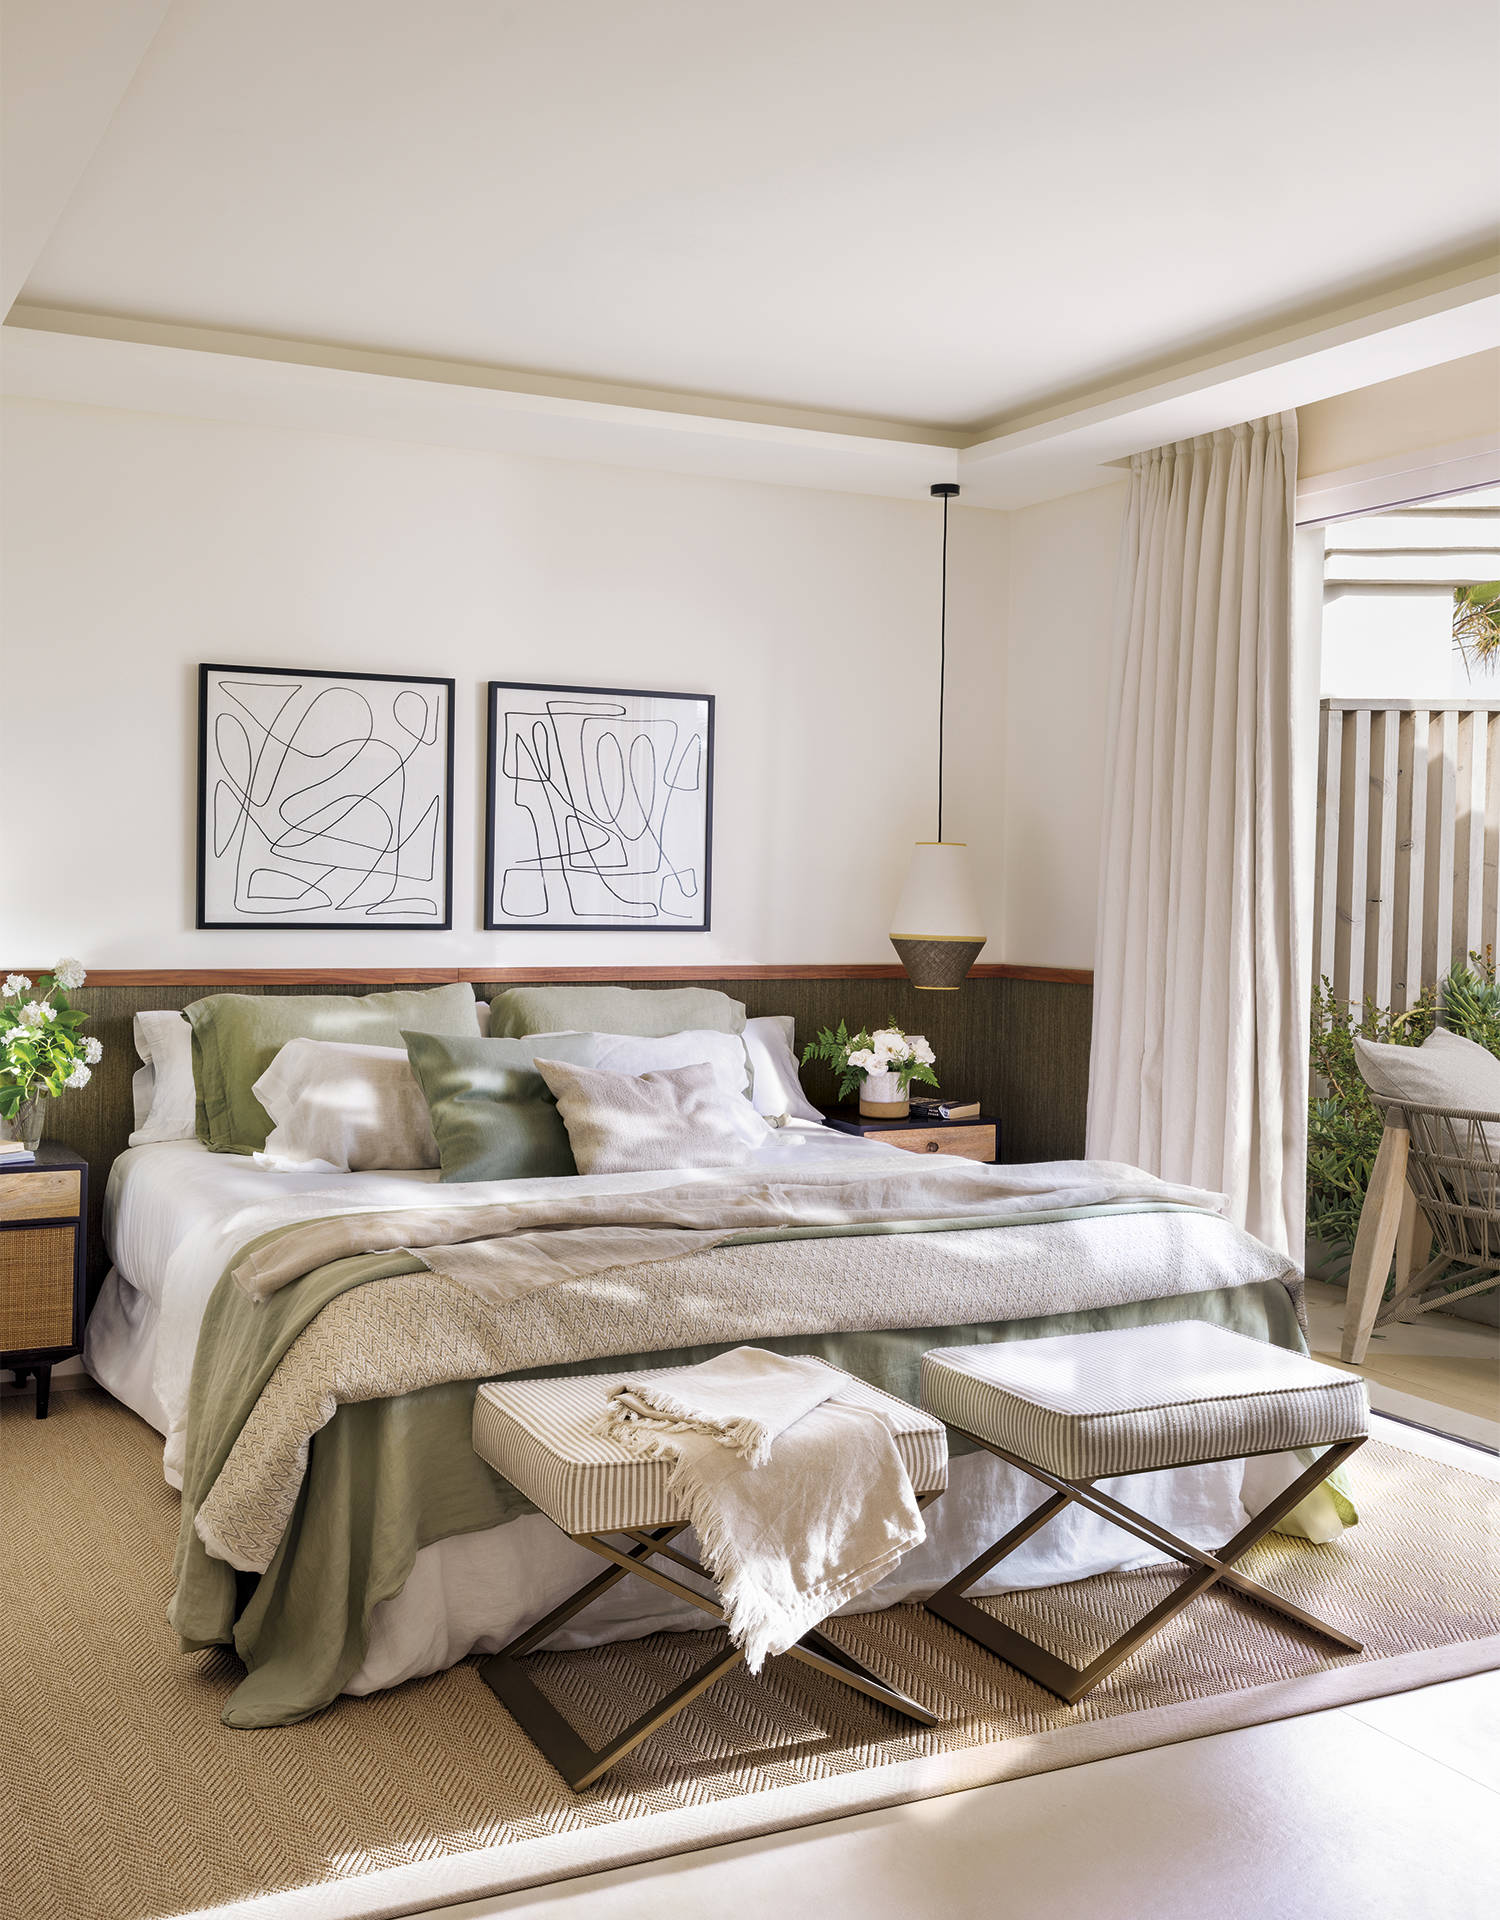 Dormitorio principal con ropa de cama verde, arrimadero como cabecero y asientos al pie de la cama